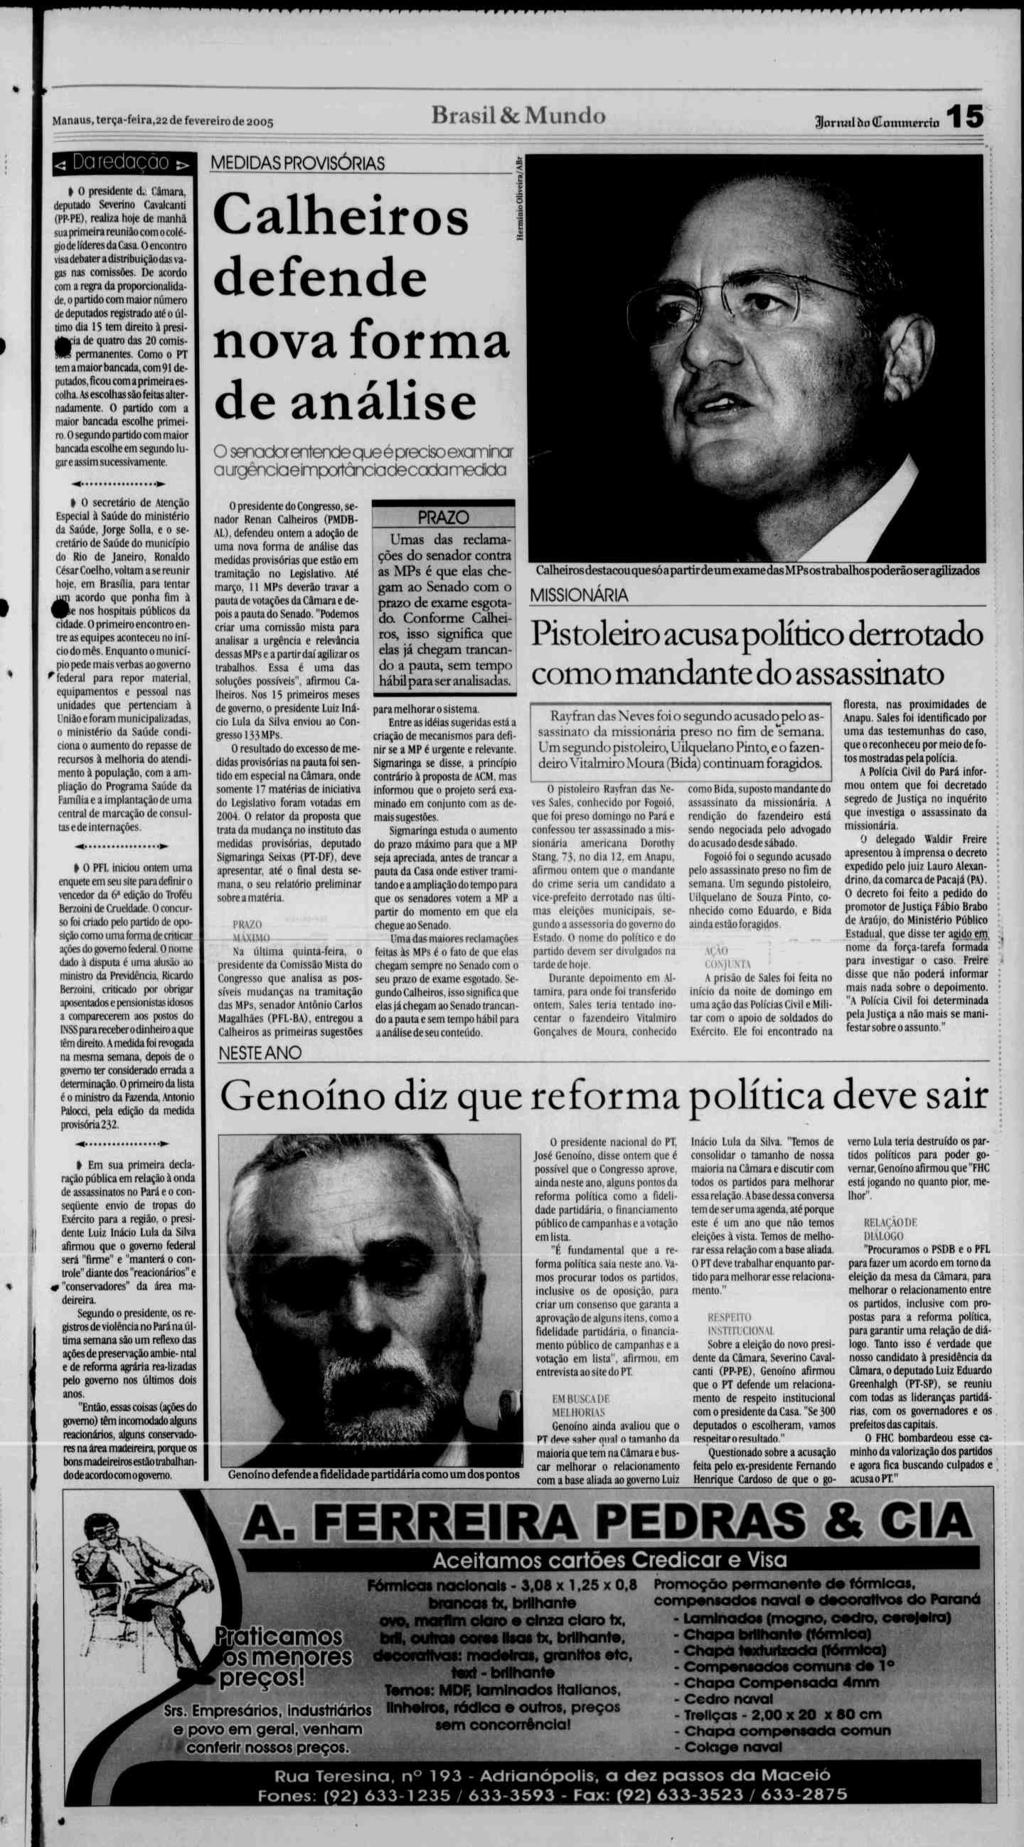 = " eaa^stwmmmmwmawm 1 wmmmmmmwmmmm^m^a-^amm Manaus, terça-feira,22 de fevereiro de 2005 Brasil & Mundo Jonnd òa (Commerrin 15 Da redação I 0 presidente d.